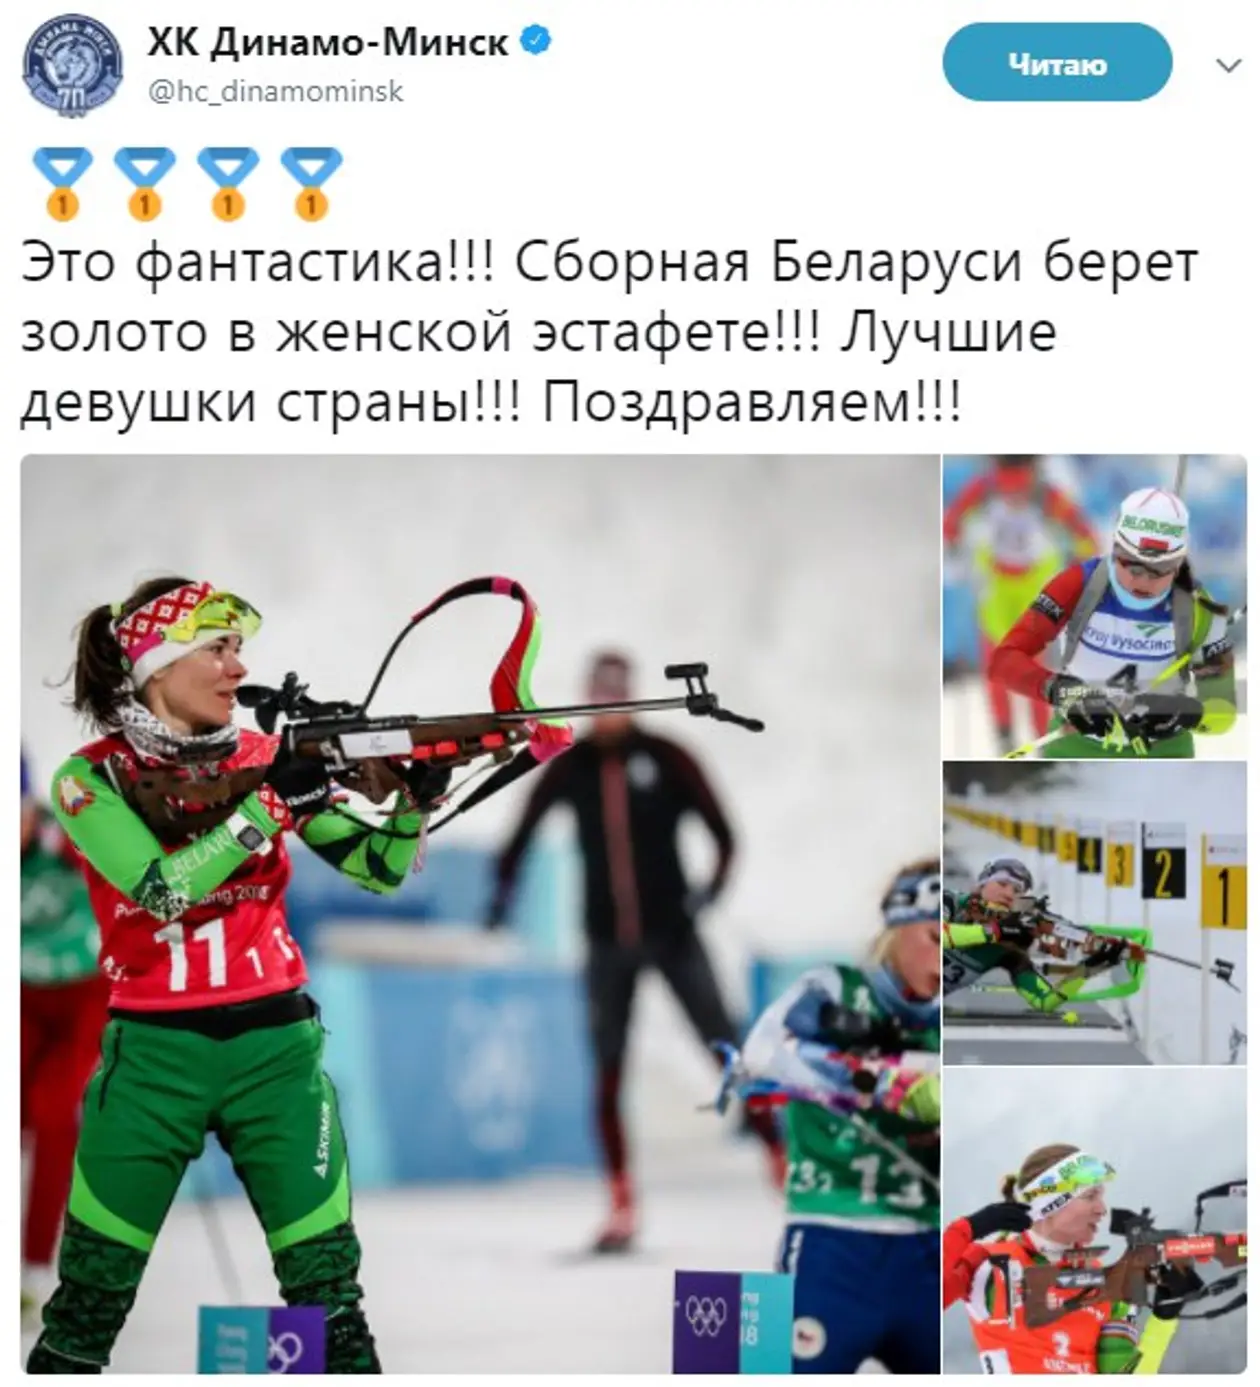 Весь белорусский спорт поздравляет «золотых» биатлонисток